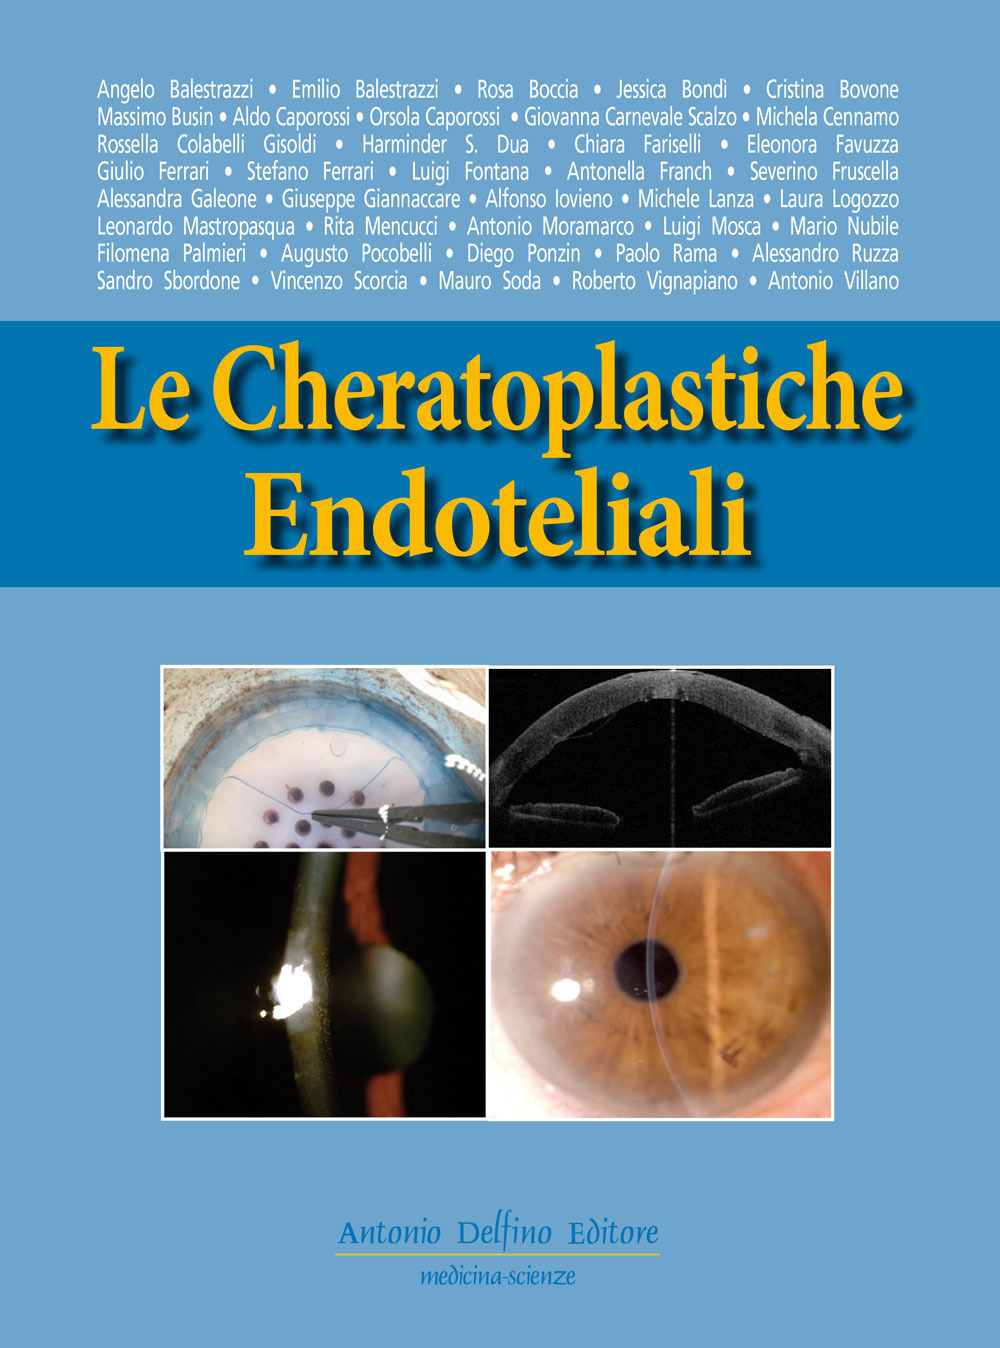 Le cheratoplastiche endoteliali